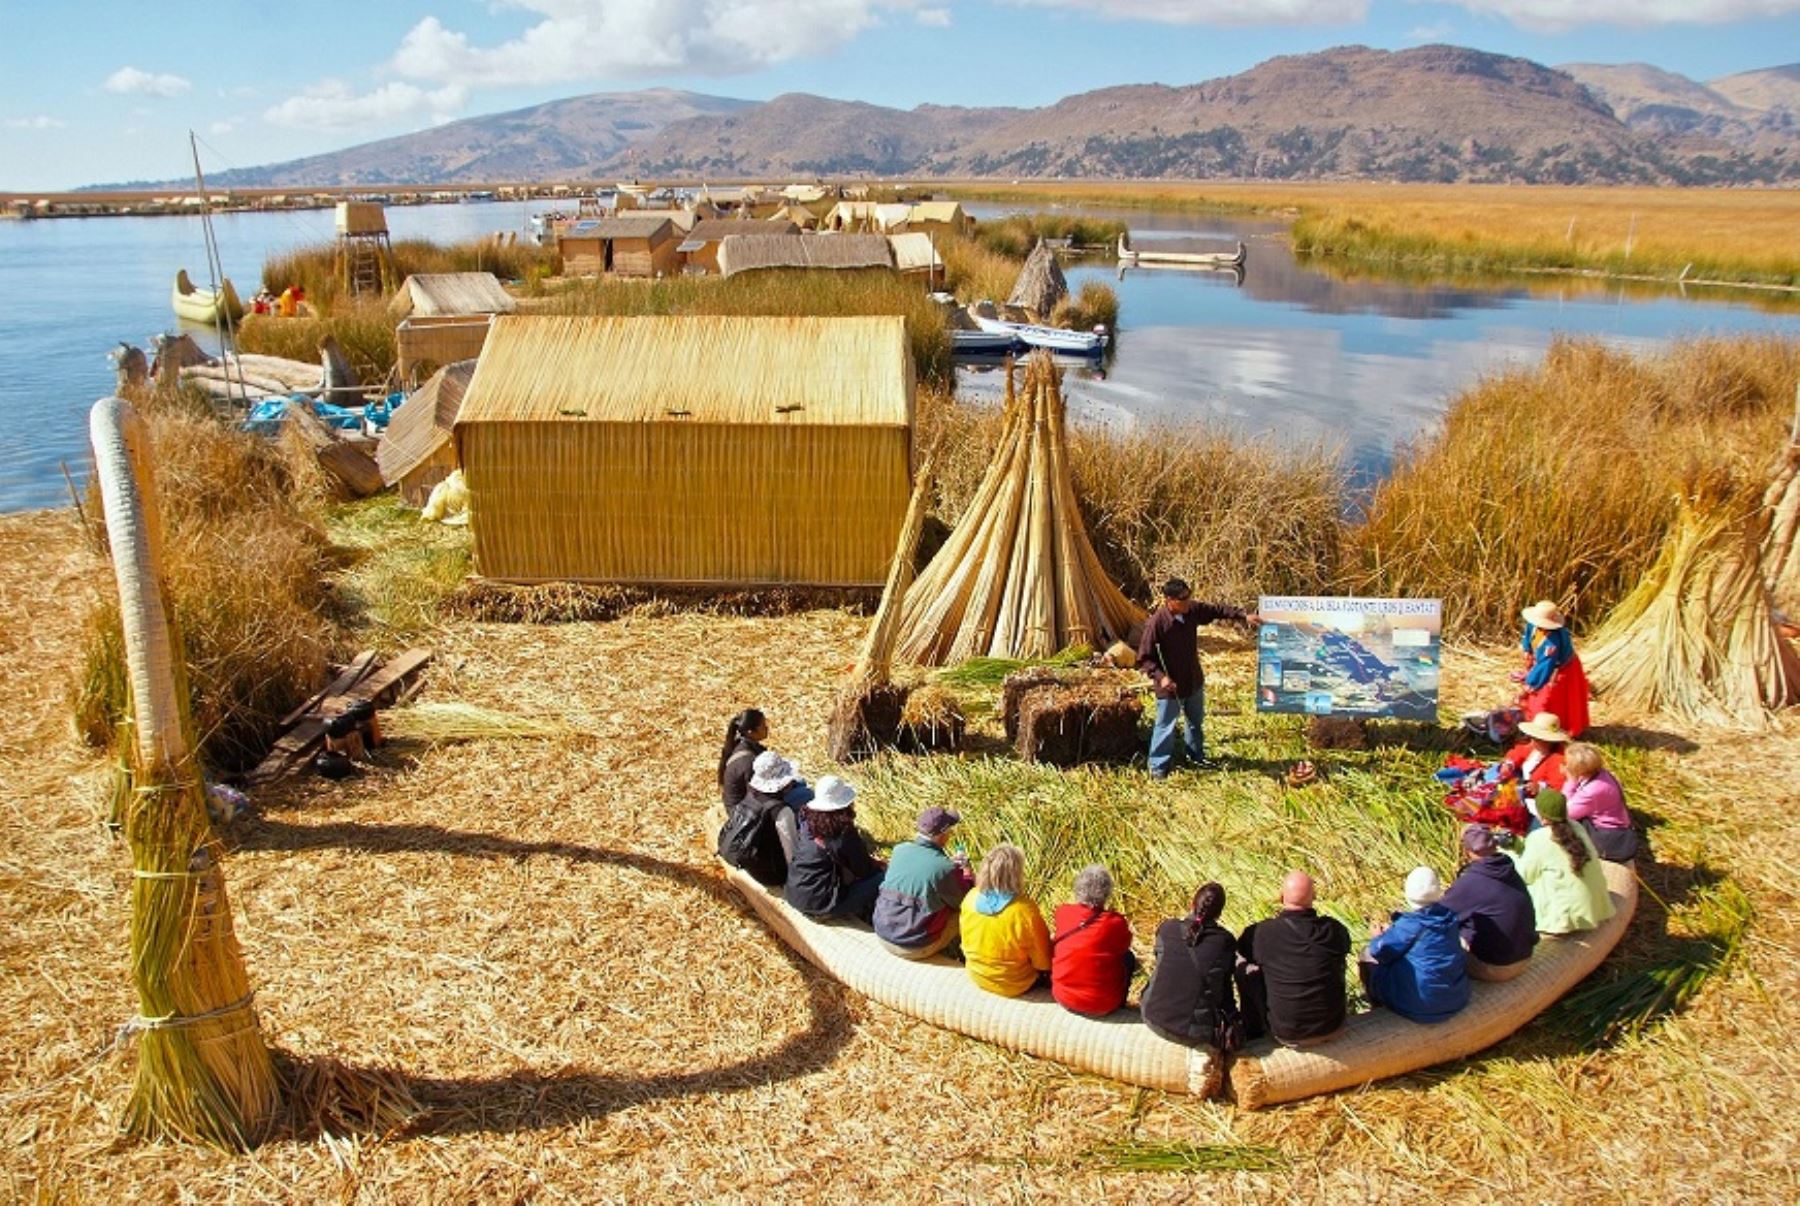 Turismo rural comunitario en islas de Los Uros en el lago Titicaca. Foto: Mincetur.